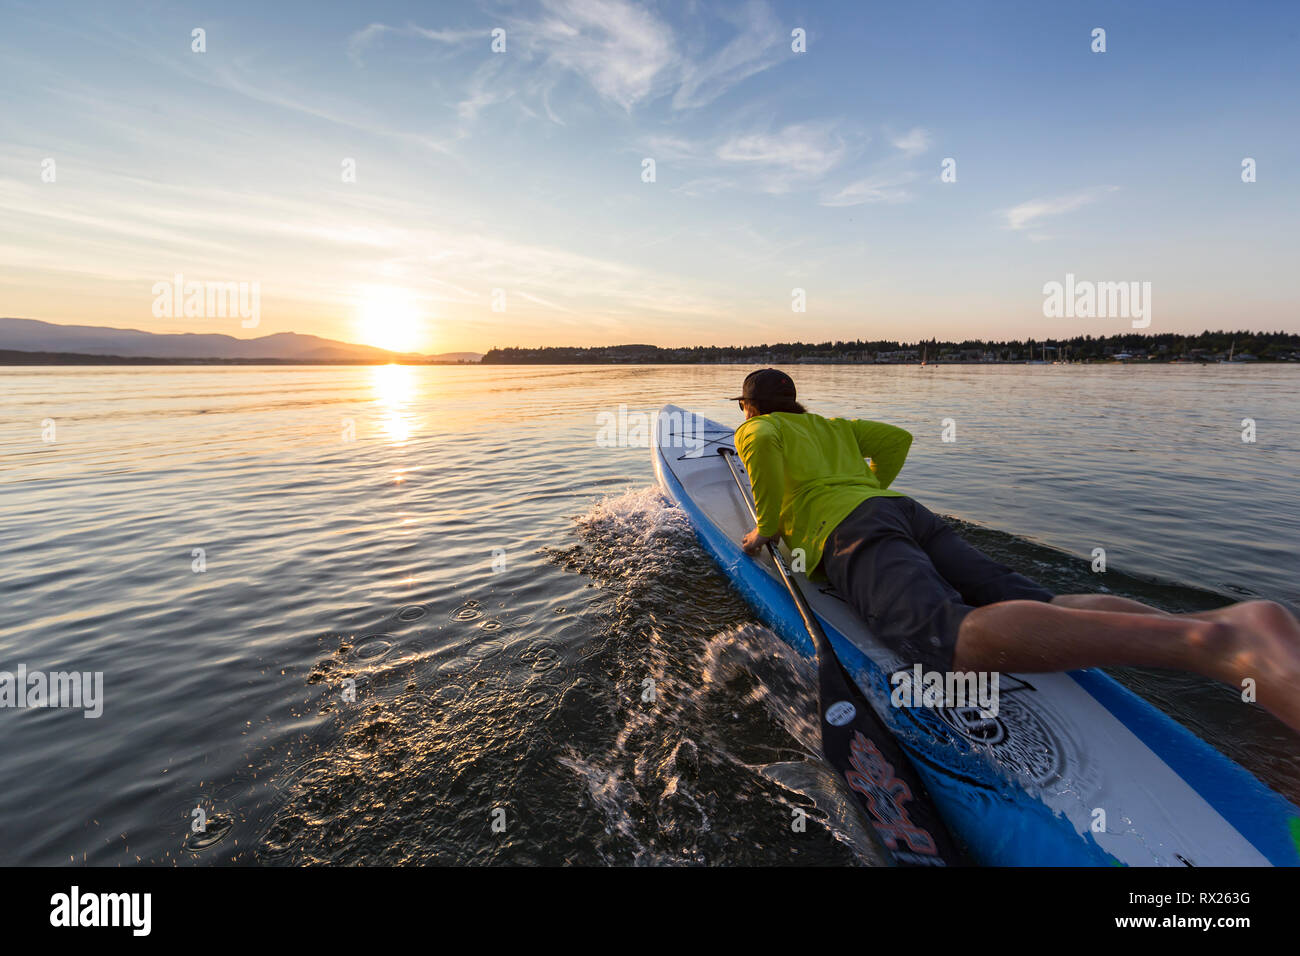 Un stand up paddleboarder lance sa carte dans les eaux de la baie de Comox en soirée, la vallée de Comox, Vancouver Island, British Columbia, Canada Banque D'Images